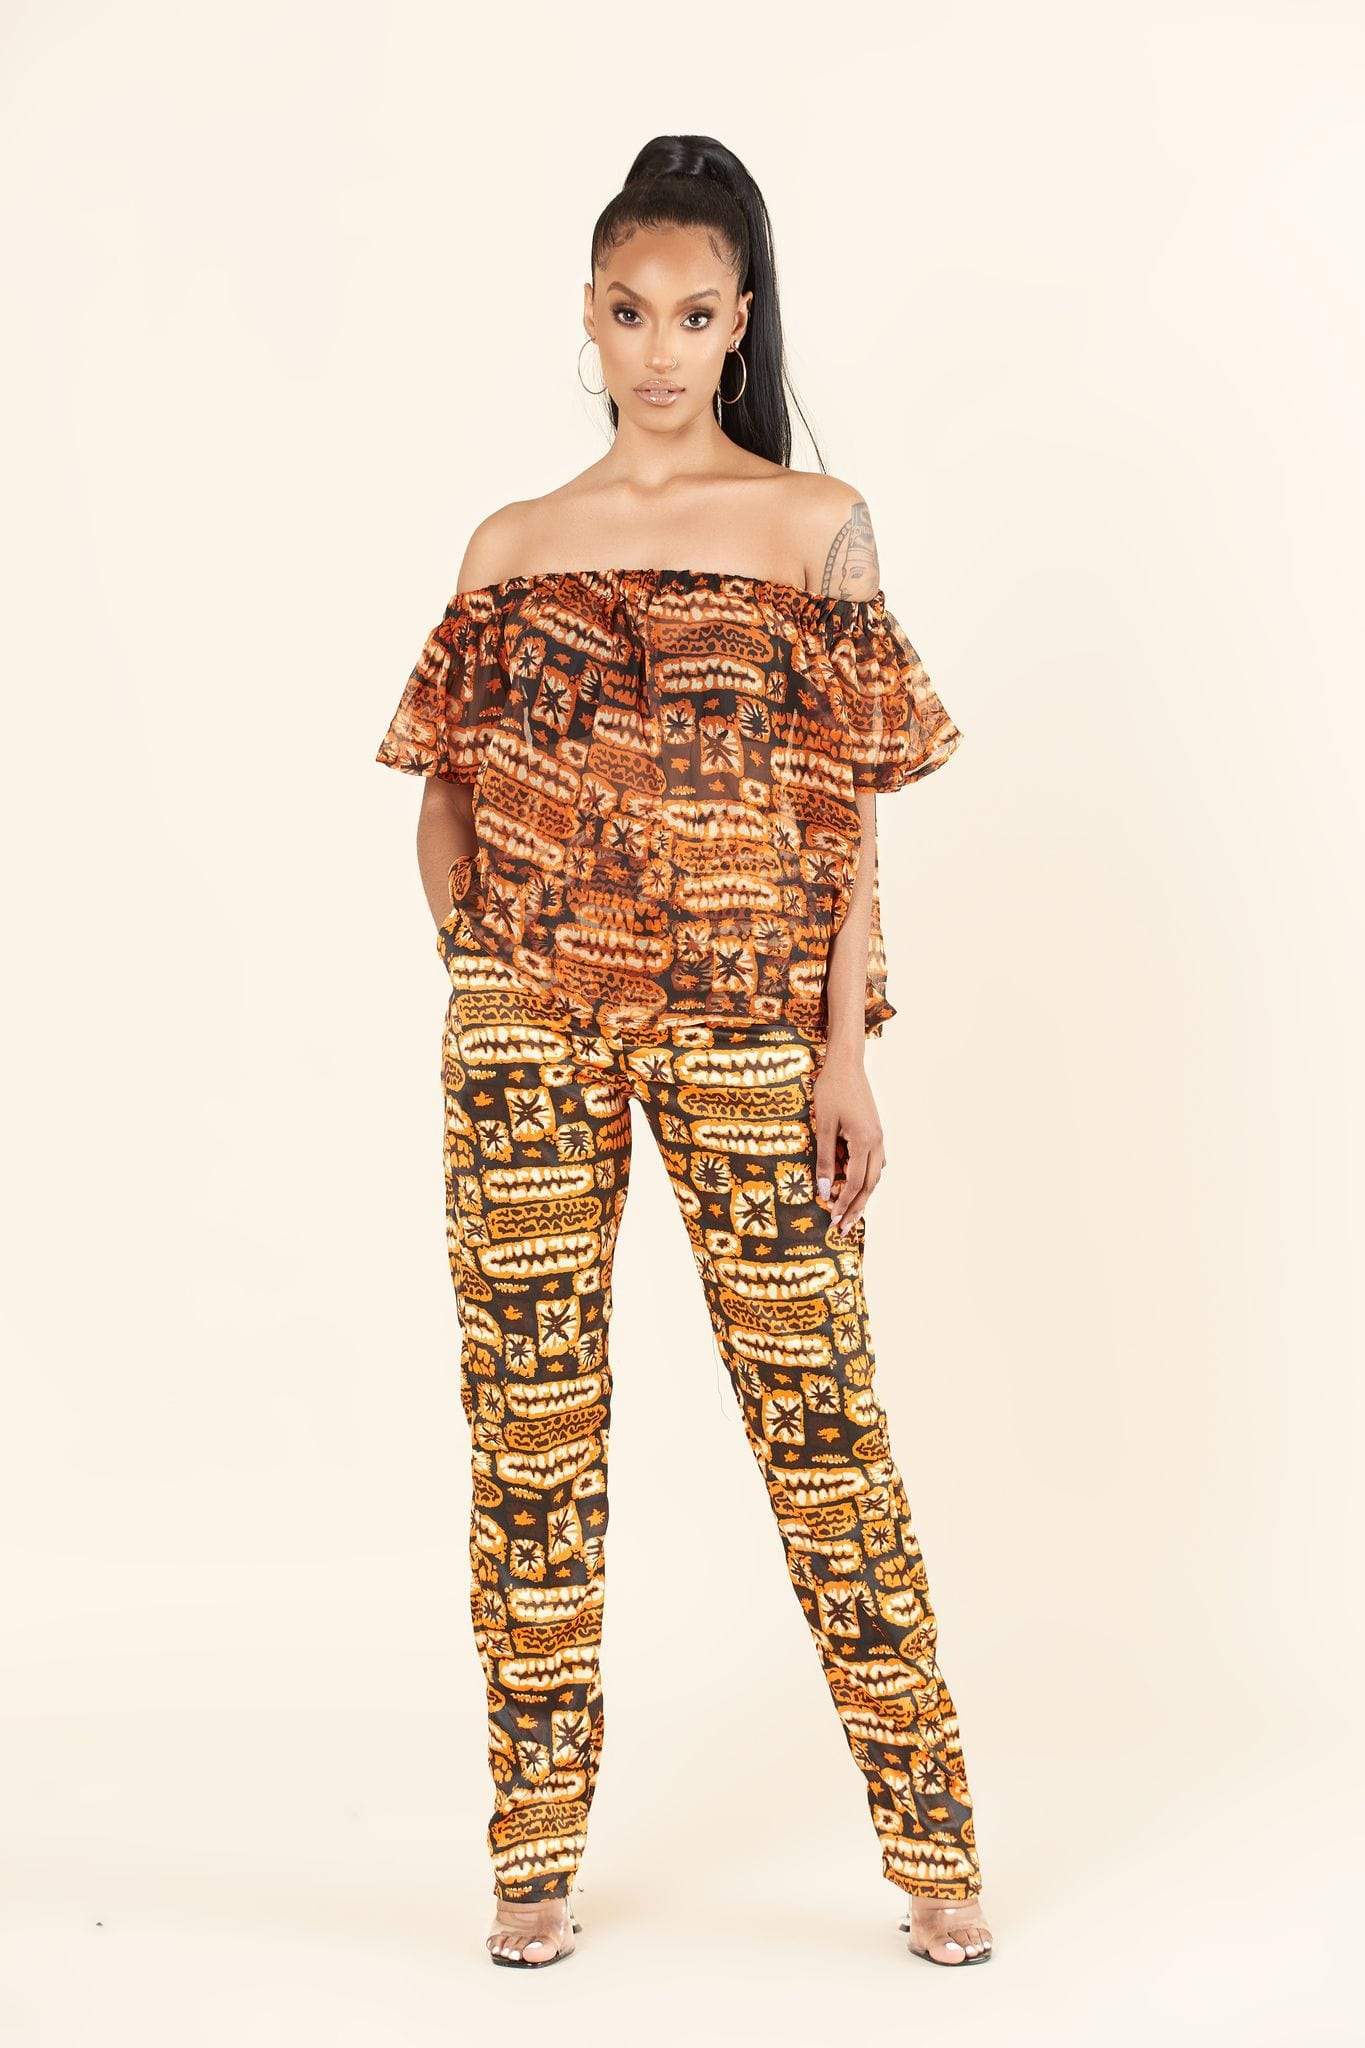 Red & Gold African Print Pants | kayraimports.com – Kayra Imports